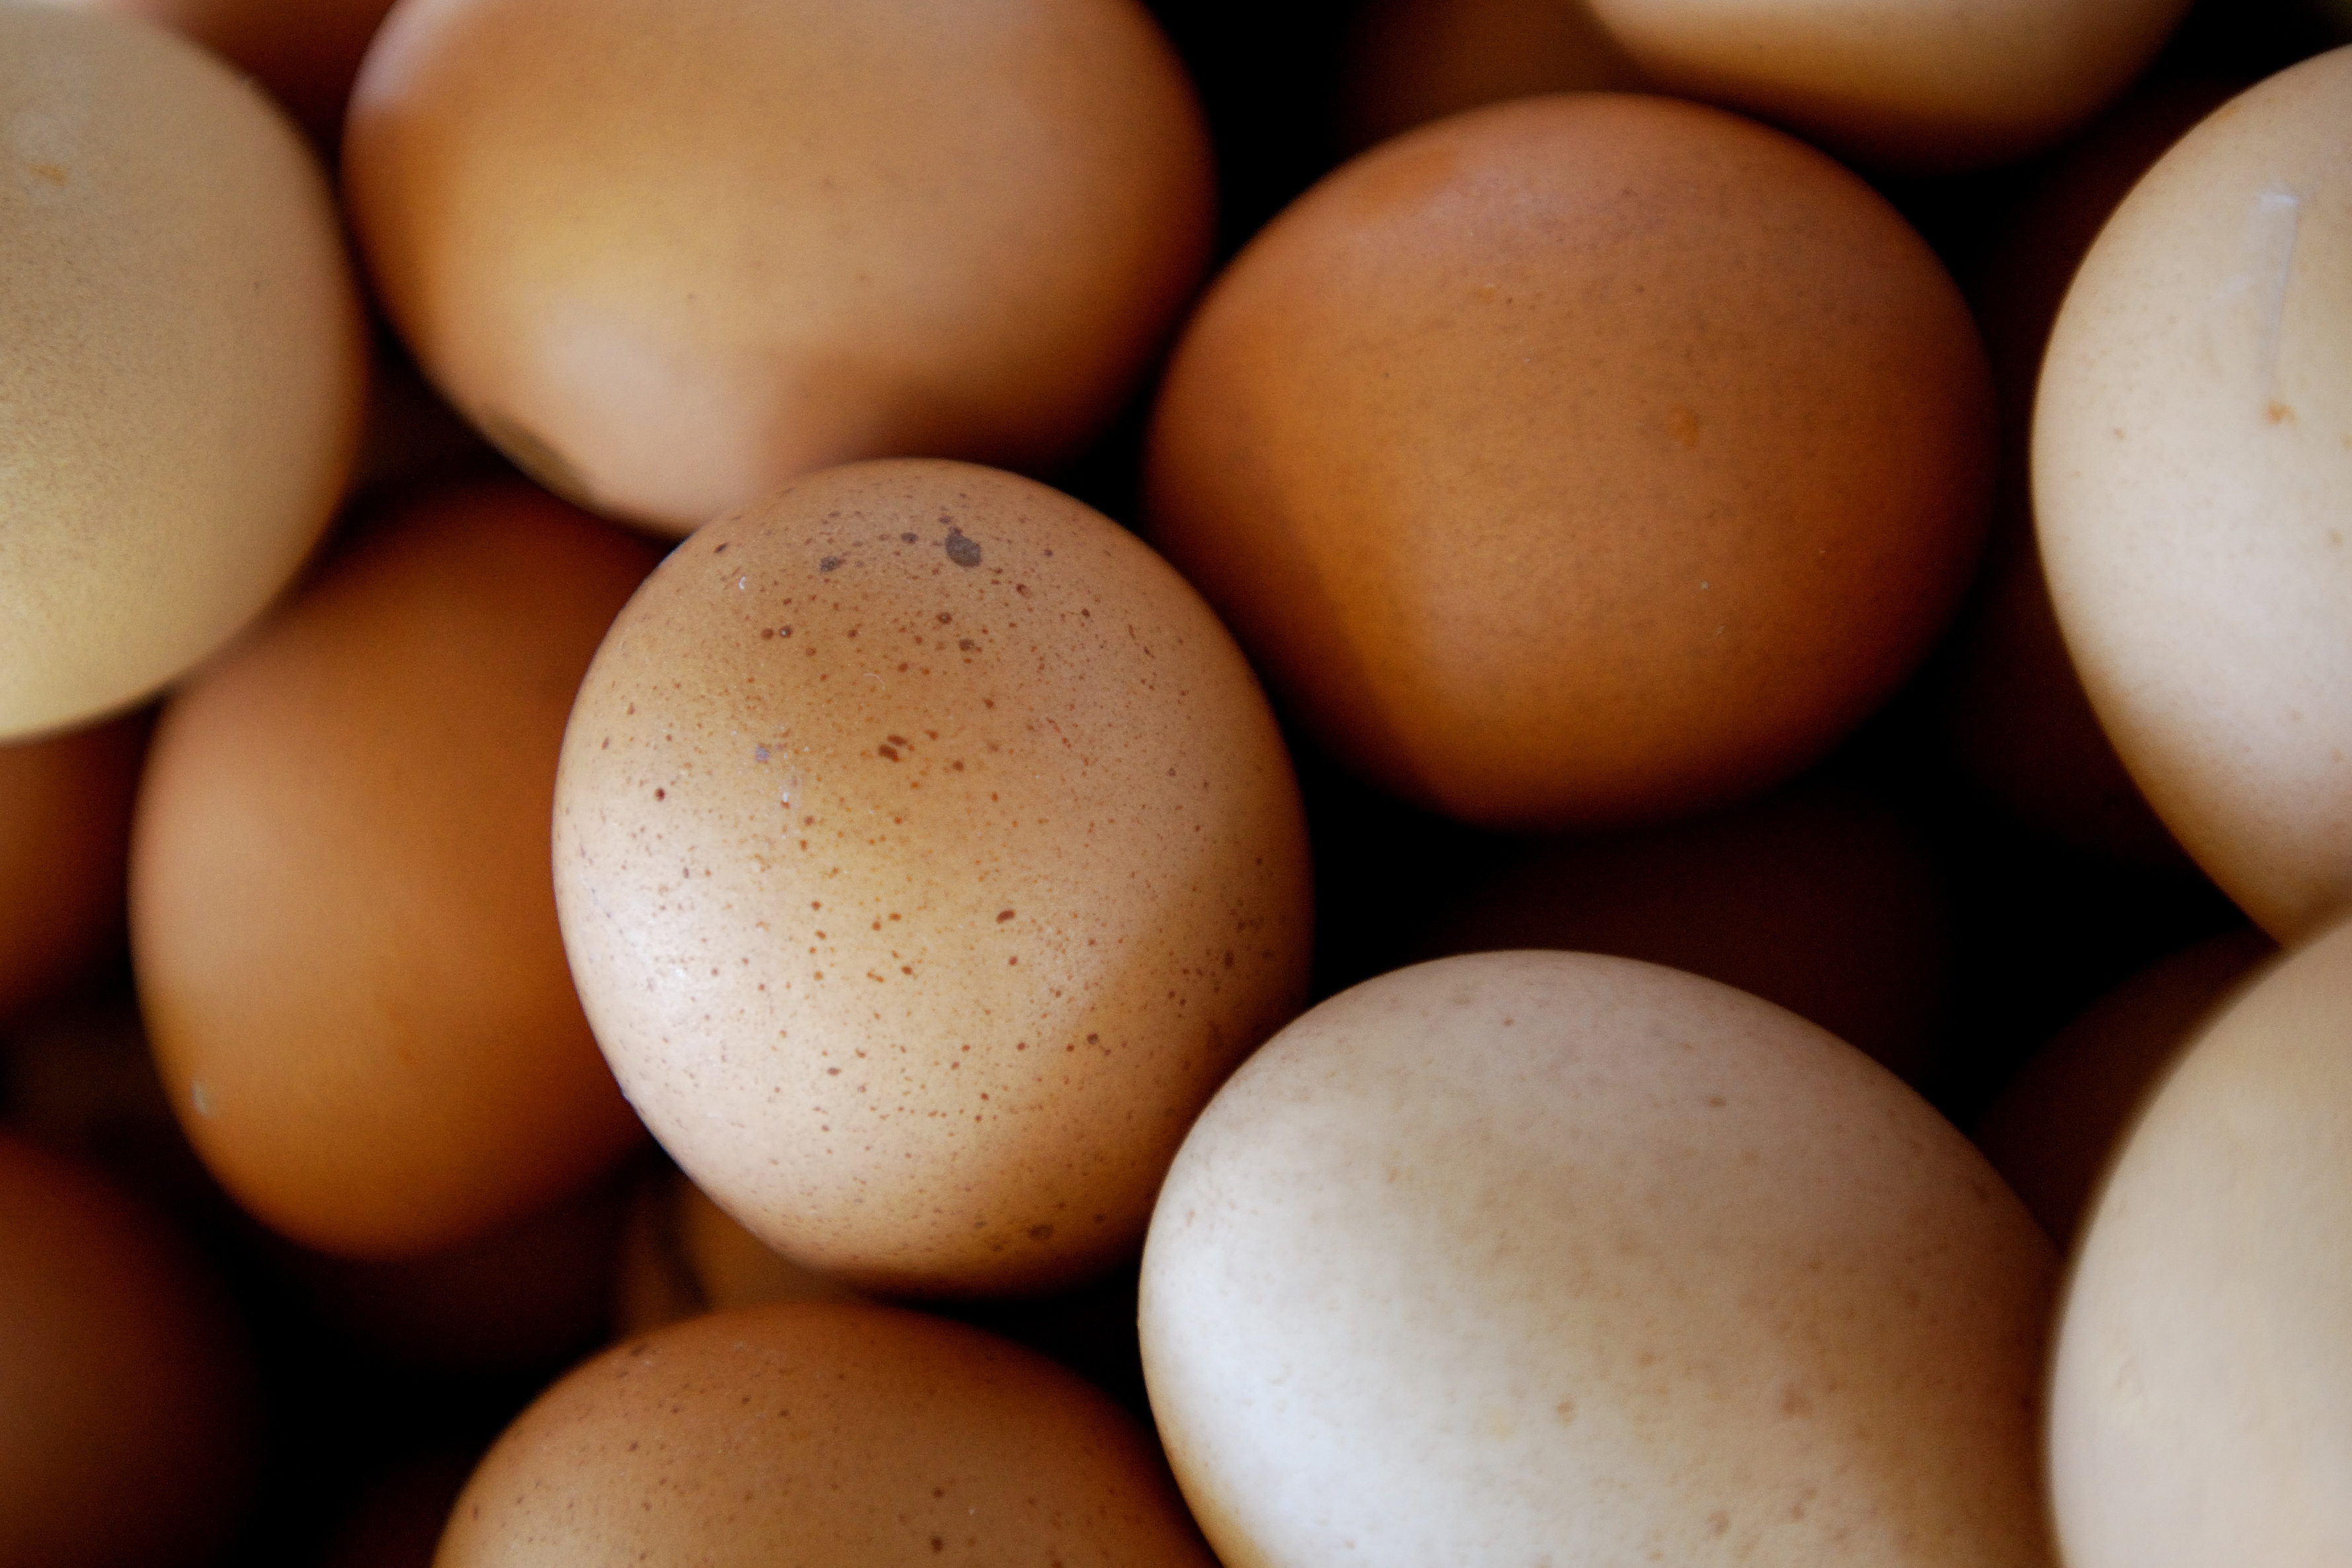 Prijs van eieren rijst de pan uit: één ei driekwart ei